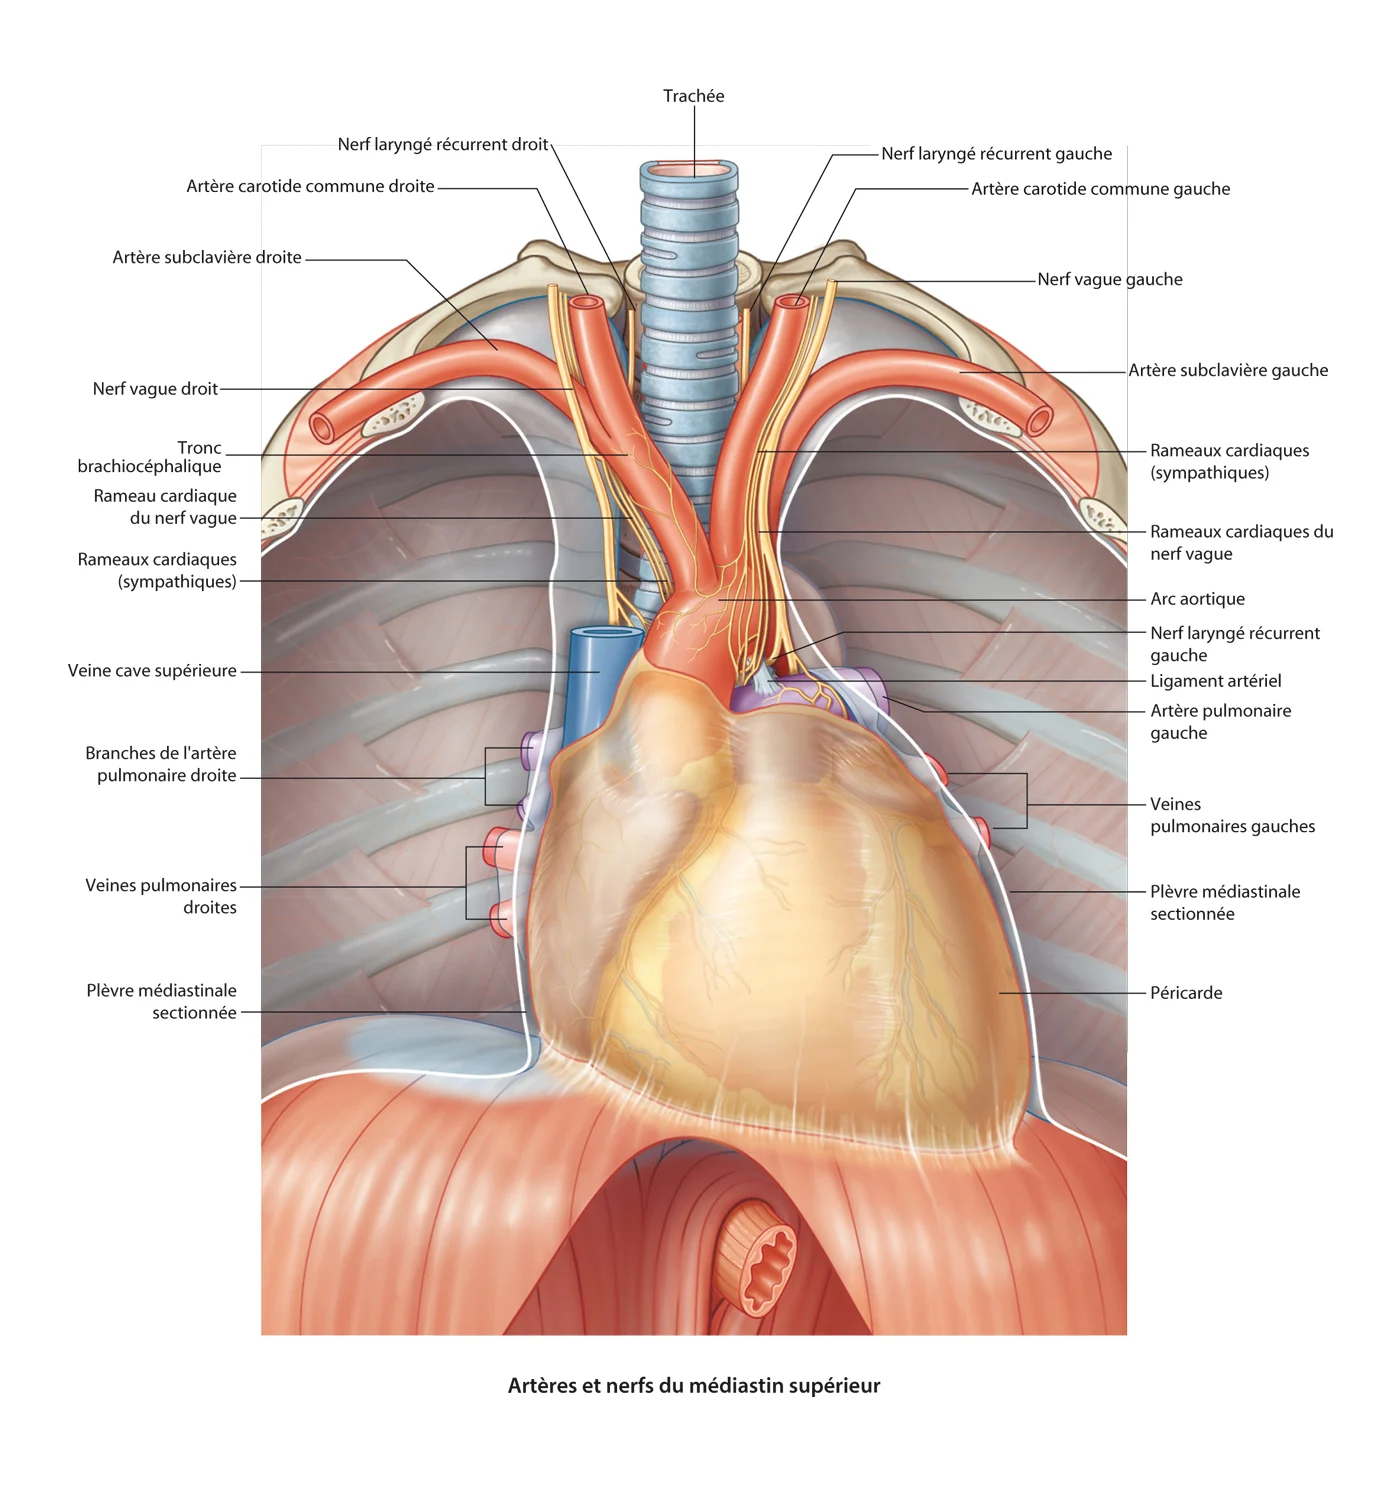 arteres et nerfs du mediastin